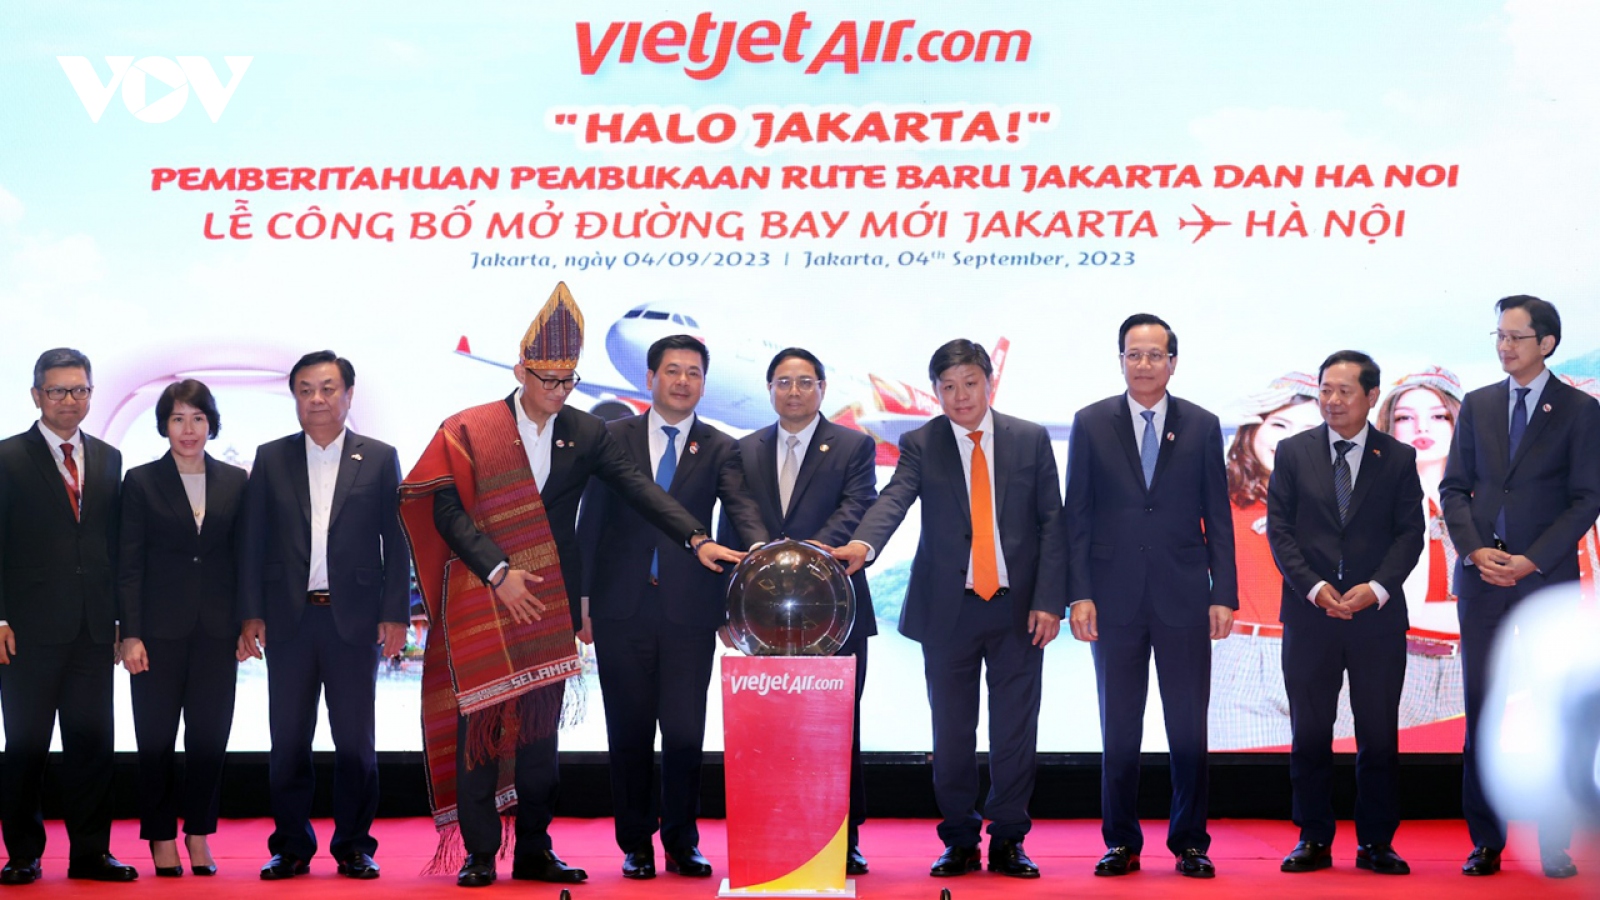 Thủ tướng chứng kiến công bố đường bay thẳng Hà Nội - Jakarta của Vietjet